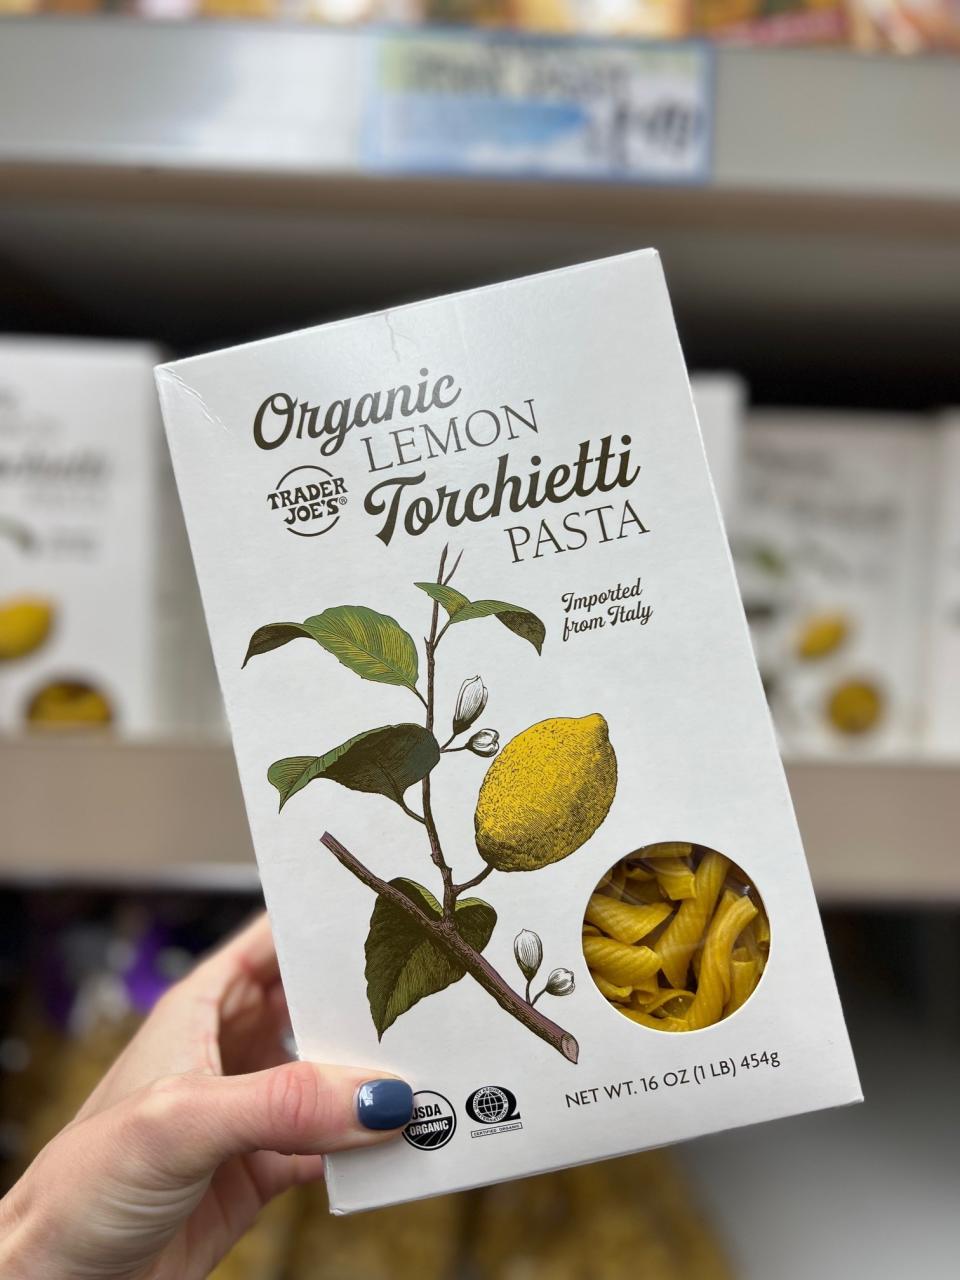 A box of Organic Lemon Torchietti Pasta